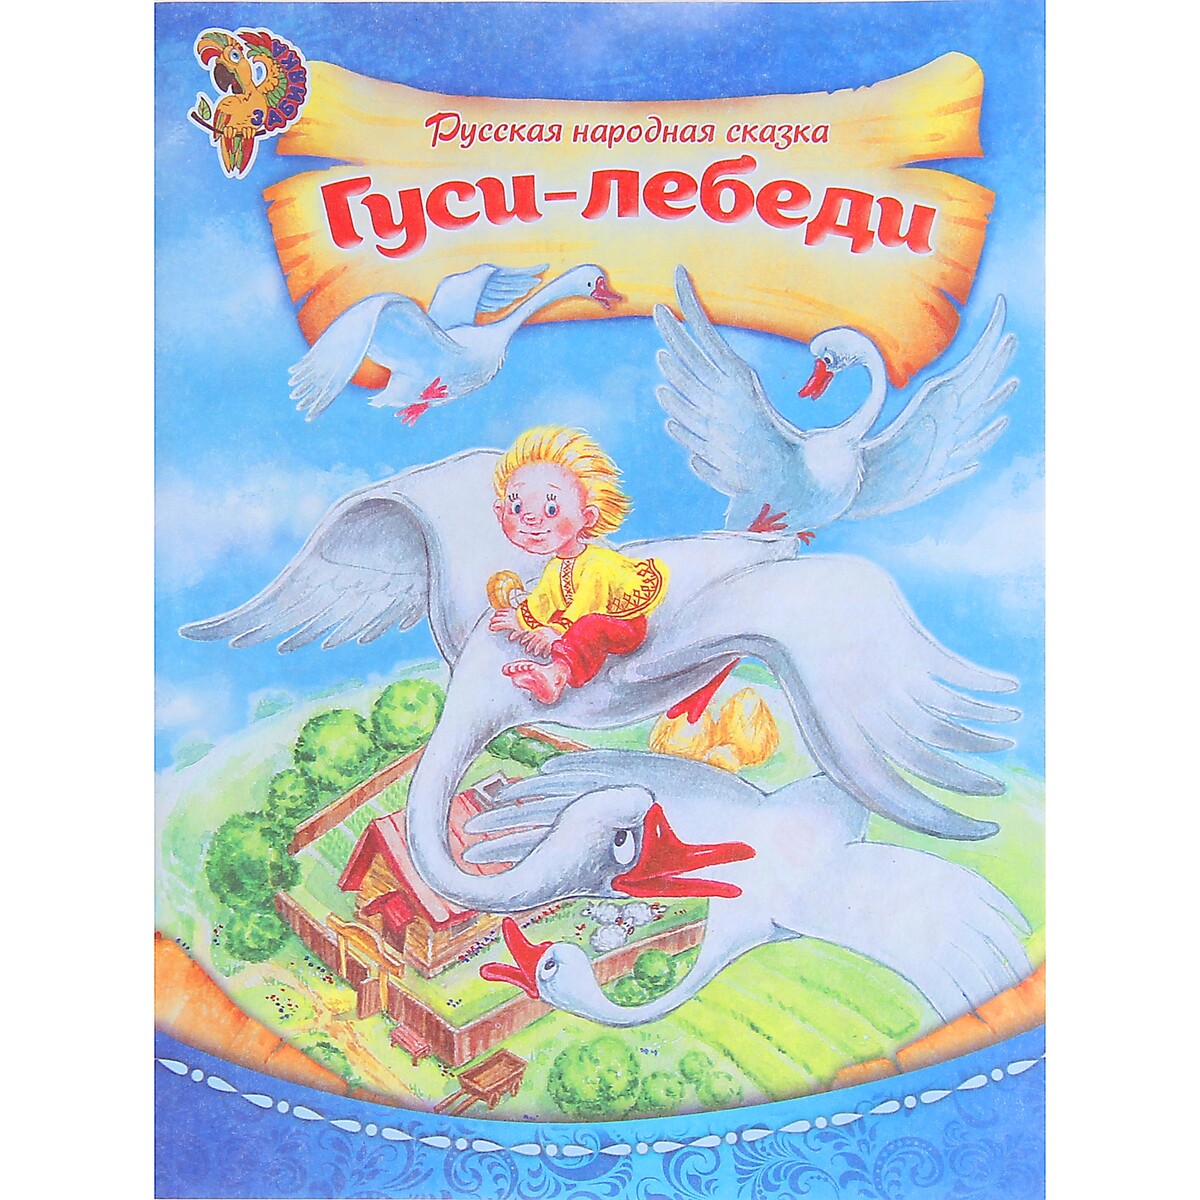 Гуси-лебеди. Русская народная сказка книга